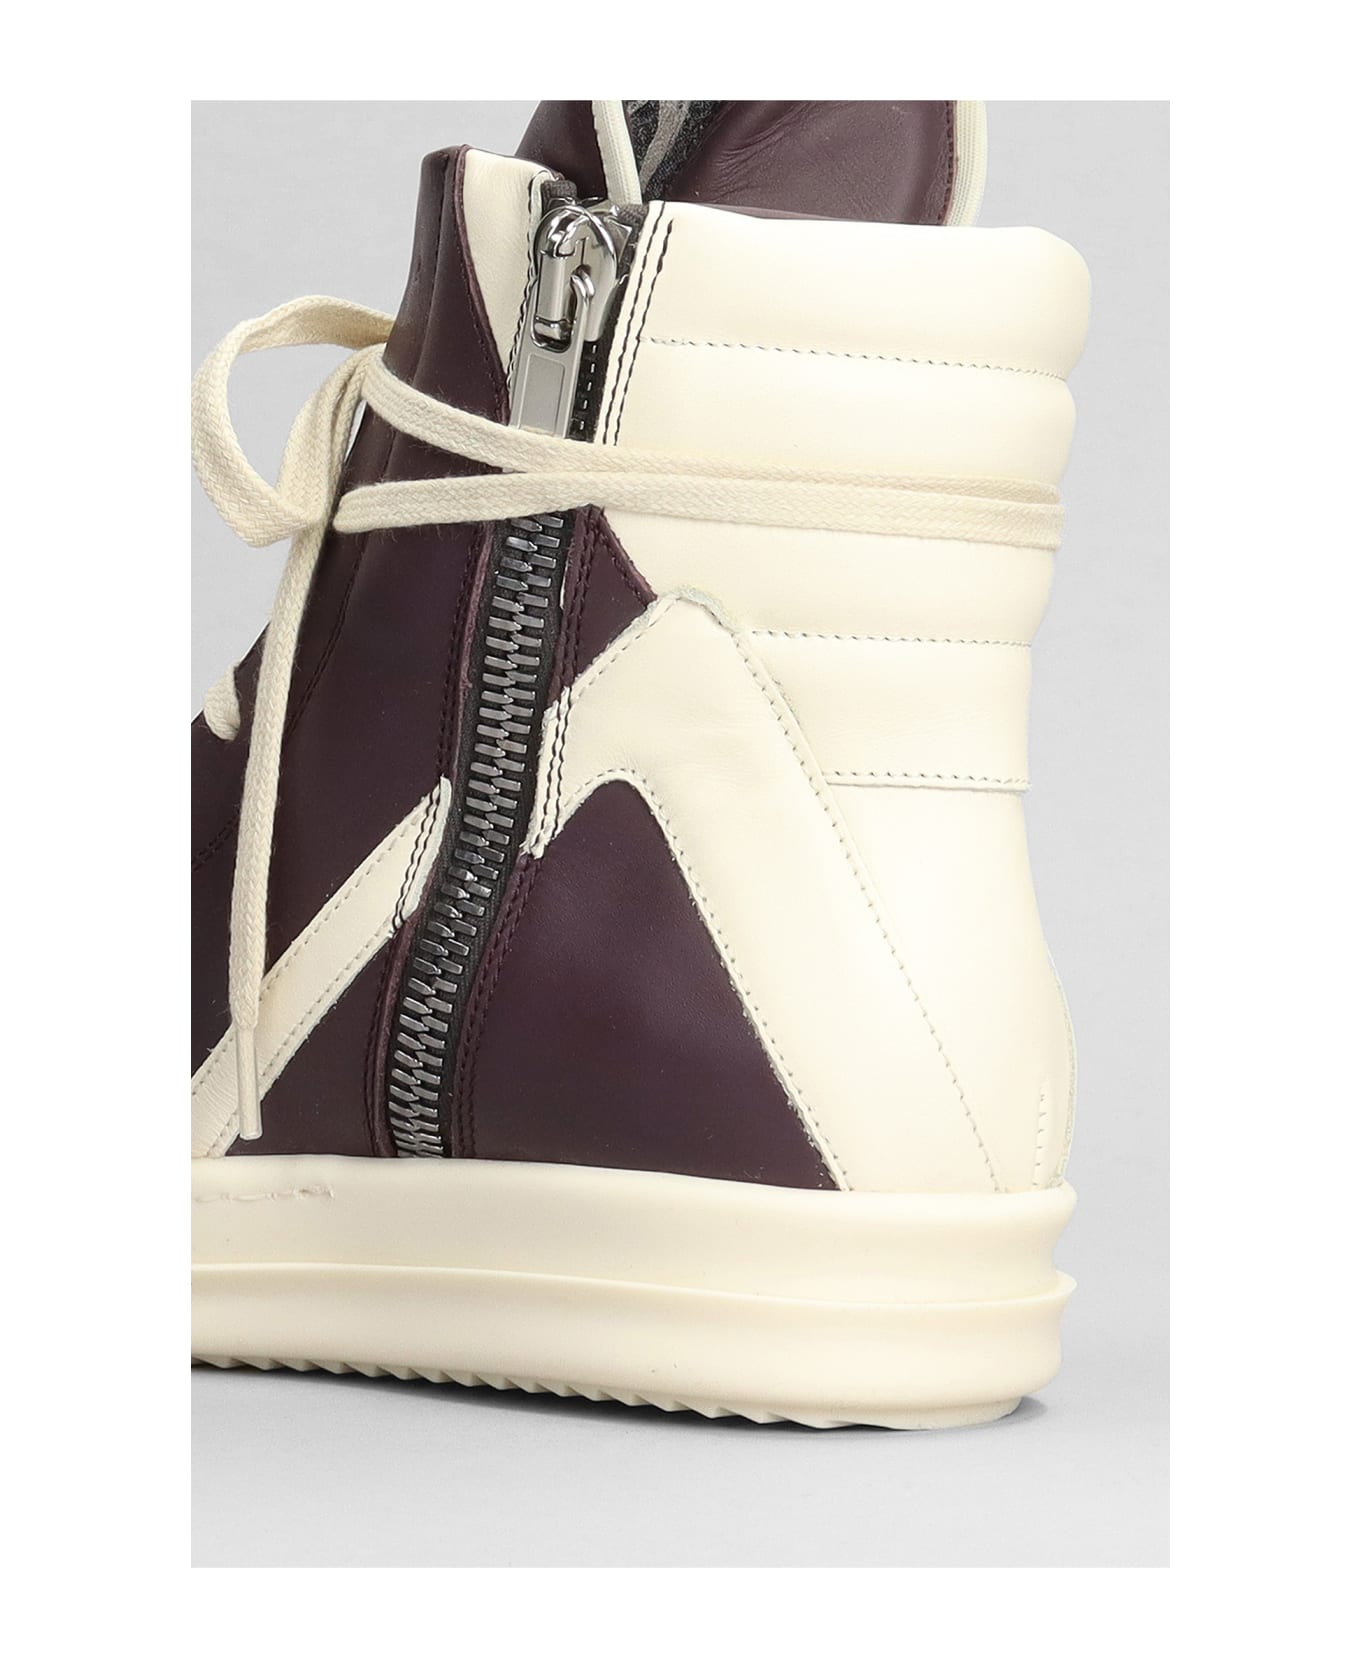 Rick Owens Geobasket Sneakers In Viola Leather - AMETISTA/MILK/MILK